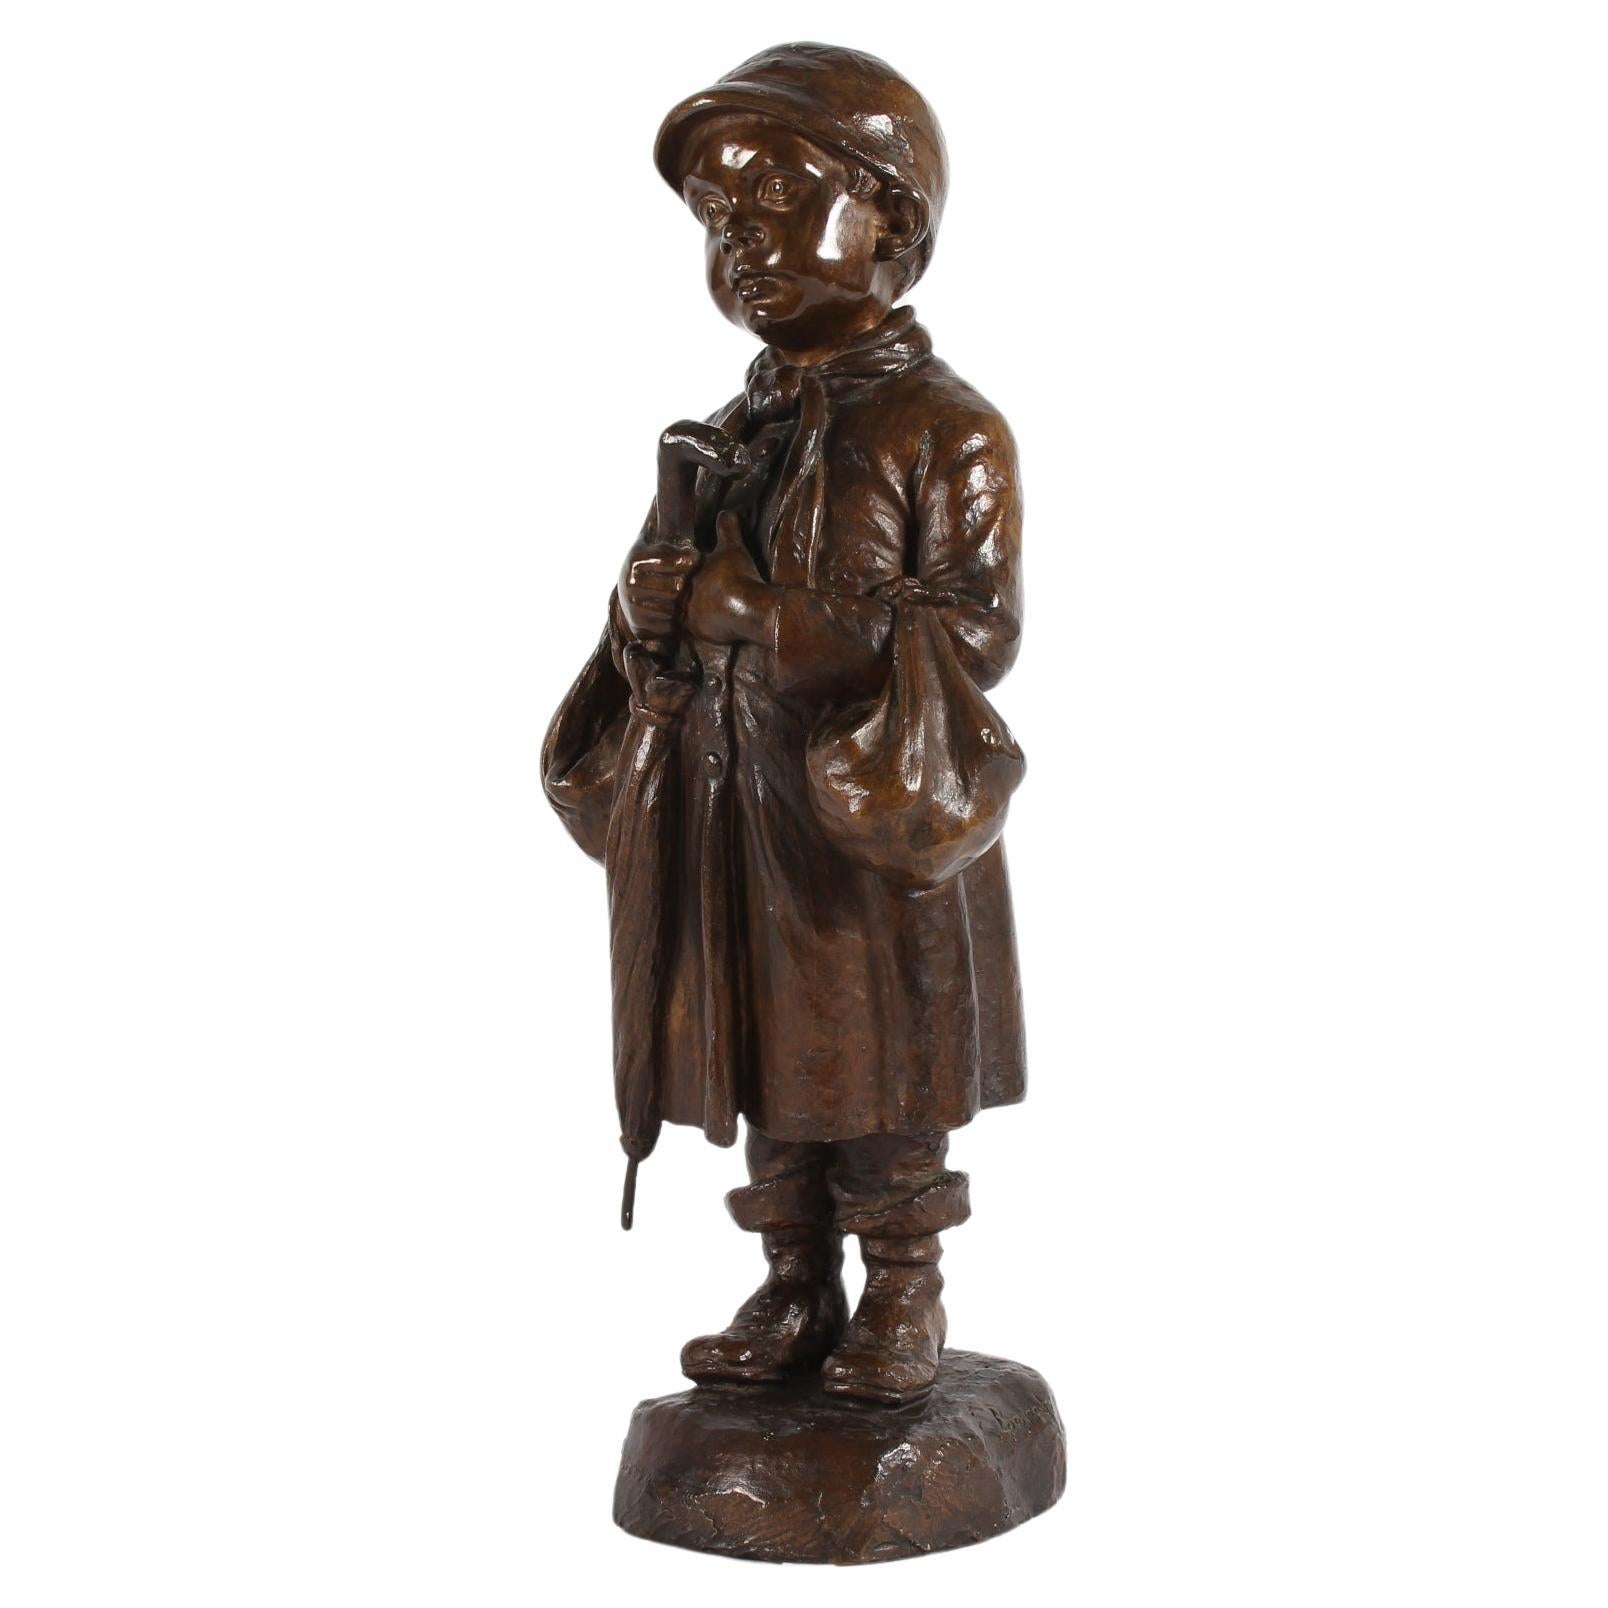 Große Figur der dänischen Künstlerin und Bildhauerin Elna Borch (1869-1950)
mit einem kleinen Jungen mit Regenschirm. Sie ist aus Bronze mit brauner Patina.
Hergestellt in den 1940er oder 1950er Jahren von der Bronzegießerei L. Rasmussen in